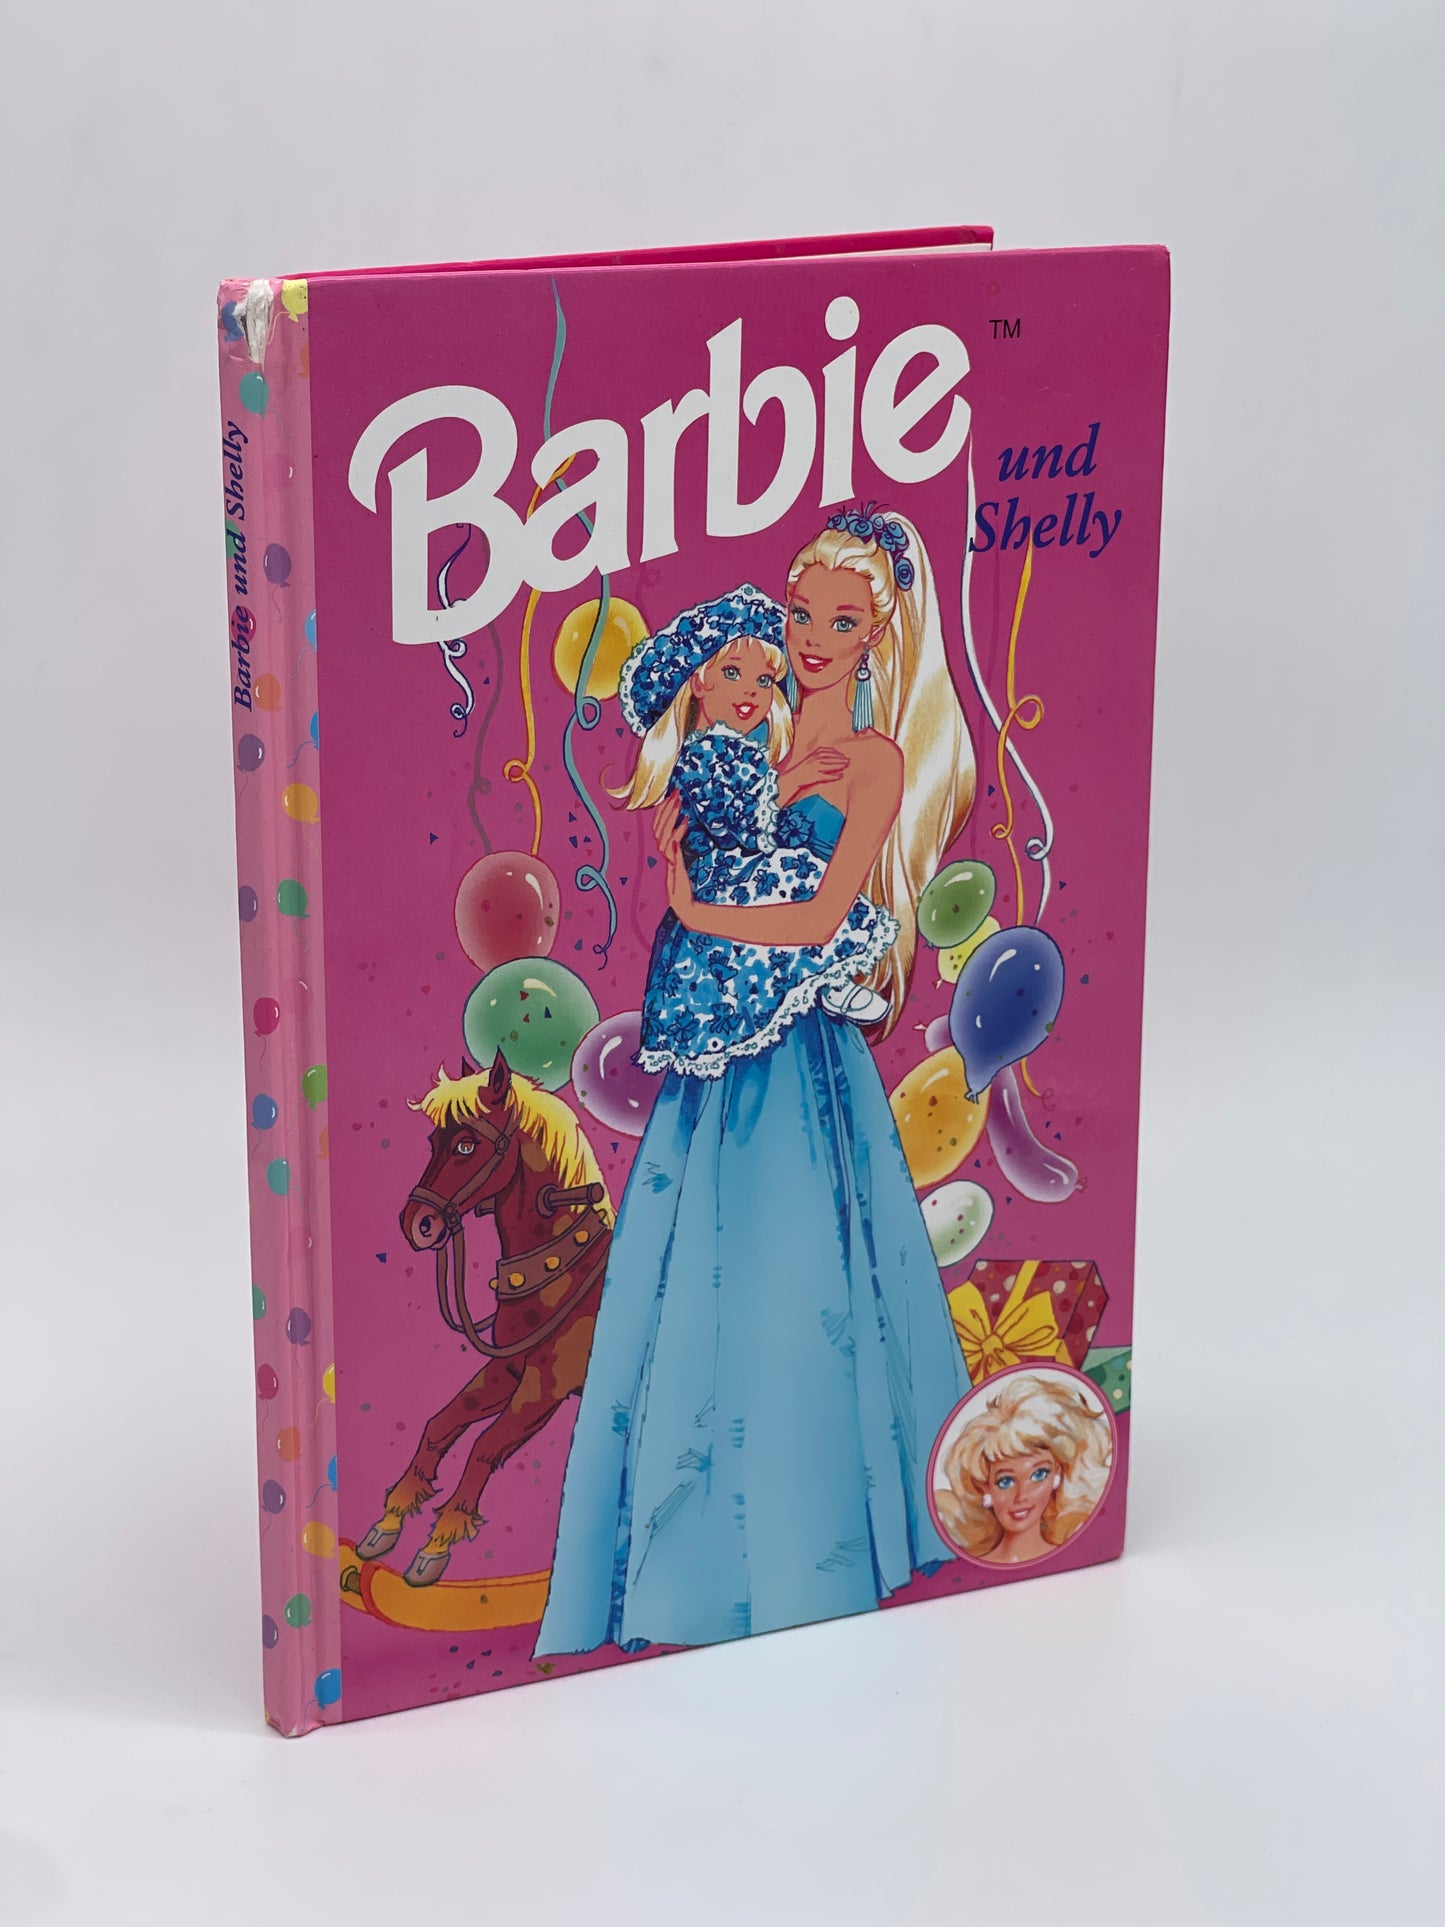 Barbie Kinderbuch "Barbie und Shelly" Egmont Horizont Verlag (1997)